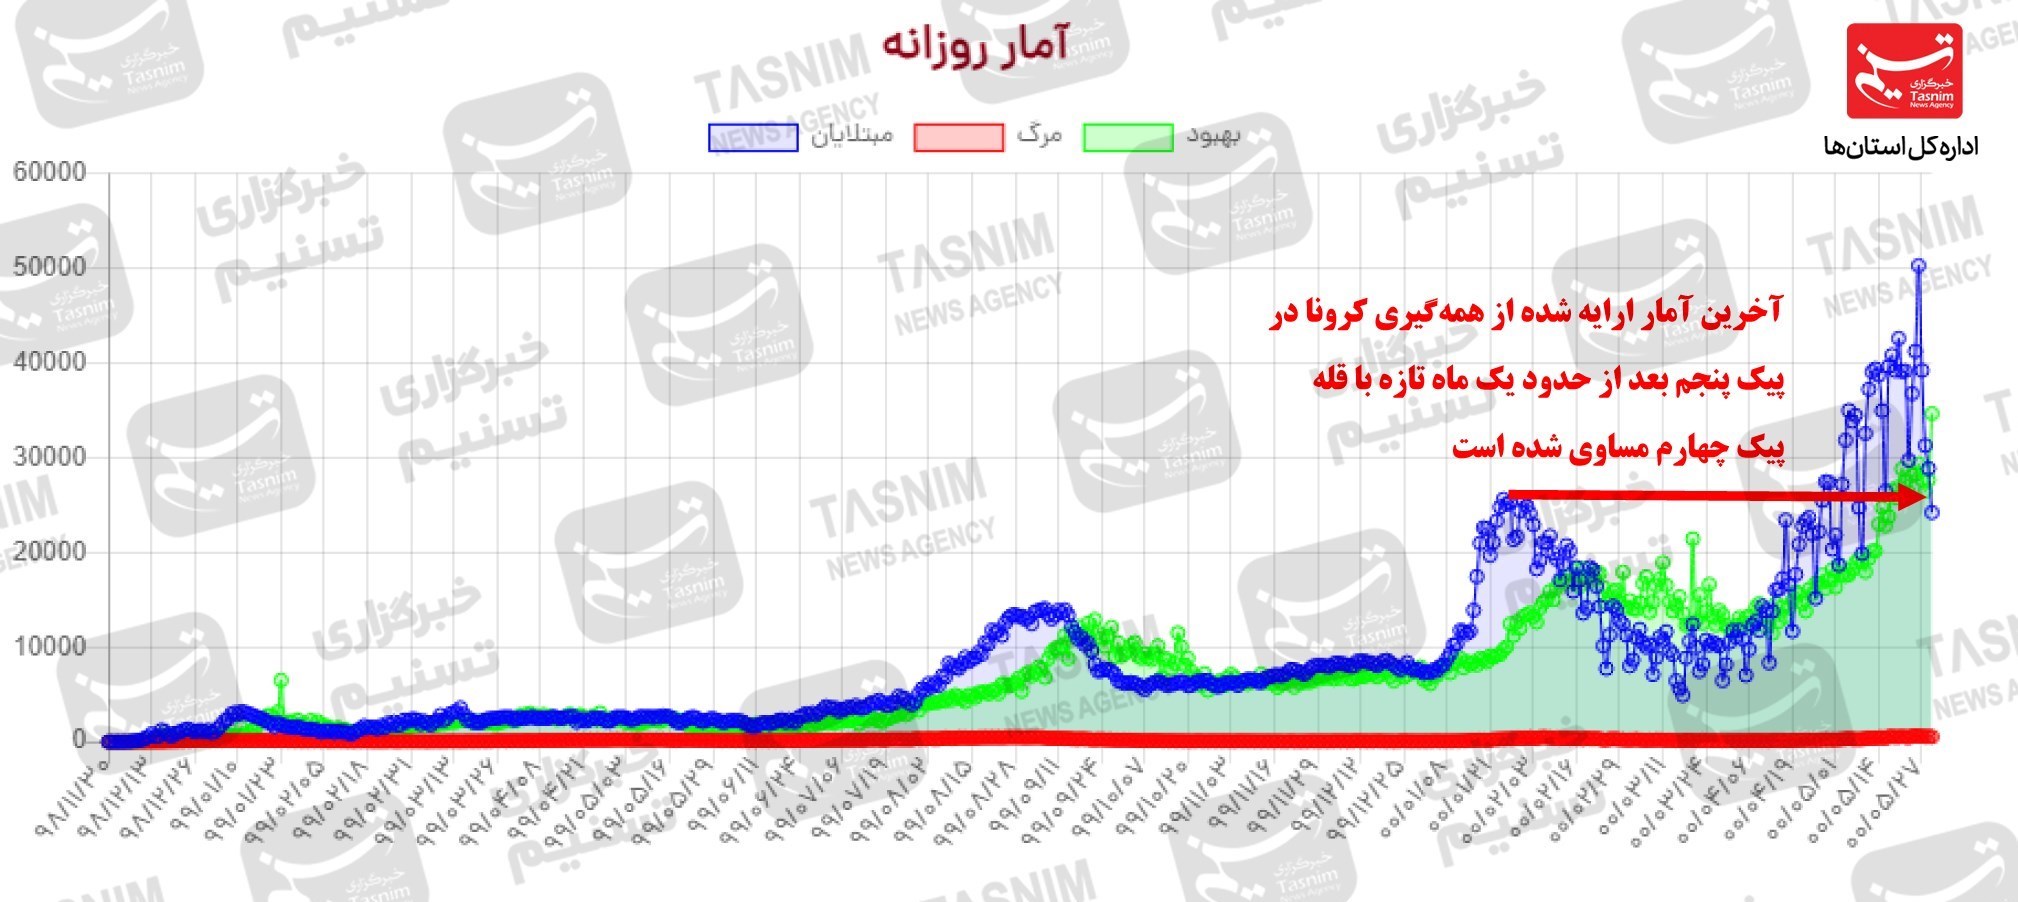 جدیدترین اخبار کرونا در ایران| شکست رکورد 684 فوتی در آخرین روز مرداد 1400 ‌/صدر‌نشینی 3 استان ساحلی خزر و قم در موارد فوتی + نقشه و نمودار